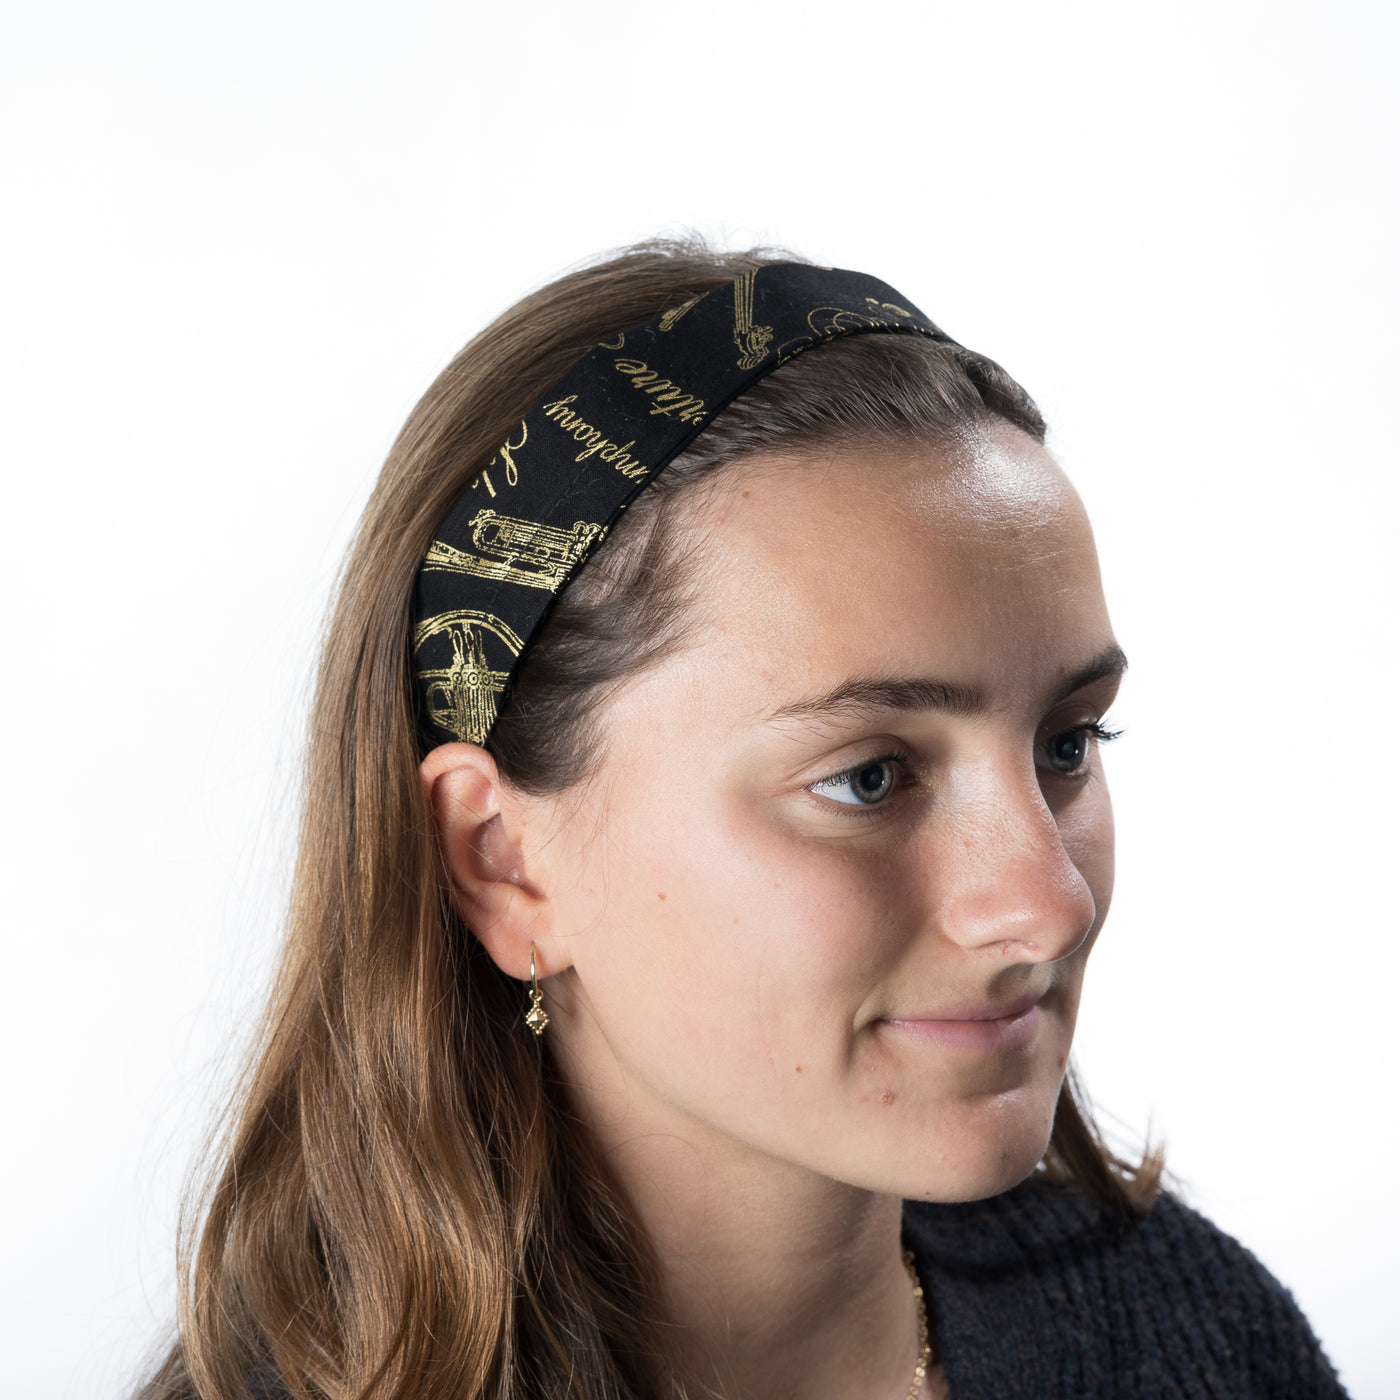 Symphony Headband ~ Handmade from 100% cotton